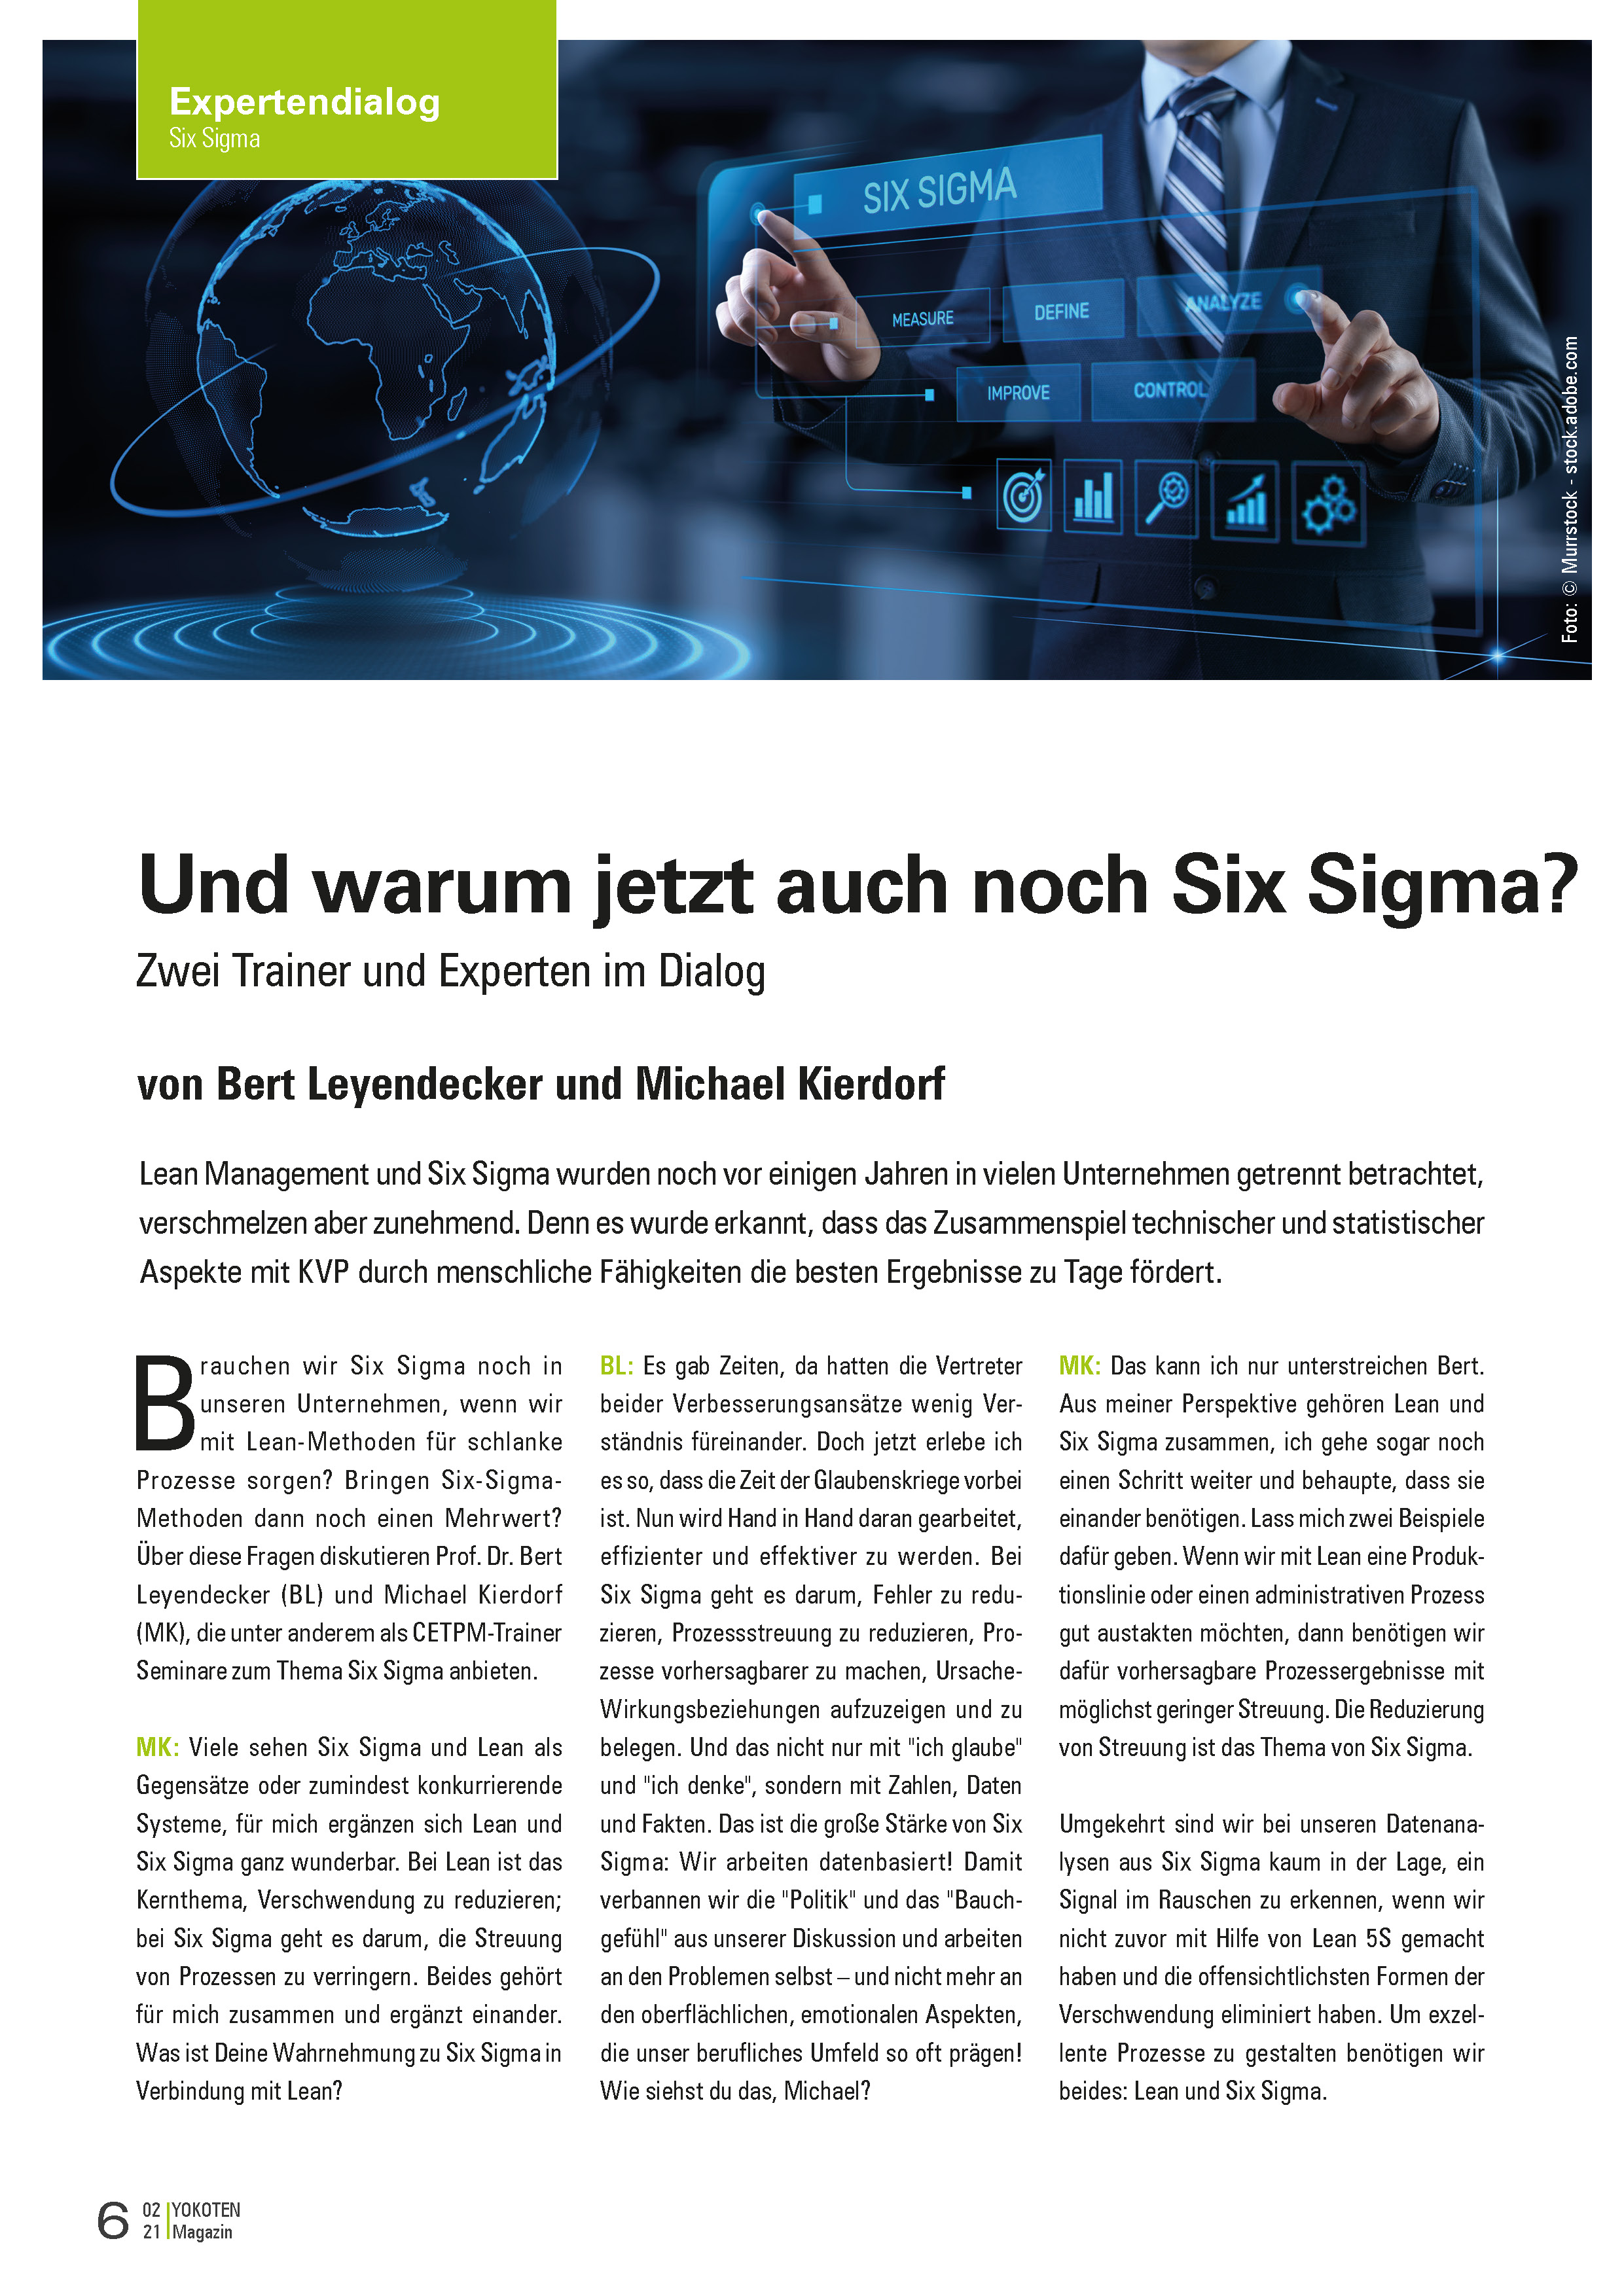 Warum jetzt auch noch Six Sigma? - Artikel aus Fachmagazin YOKOTEN 2021-02